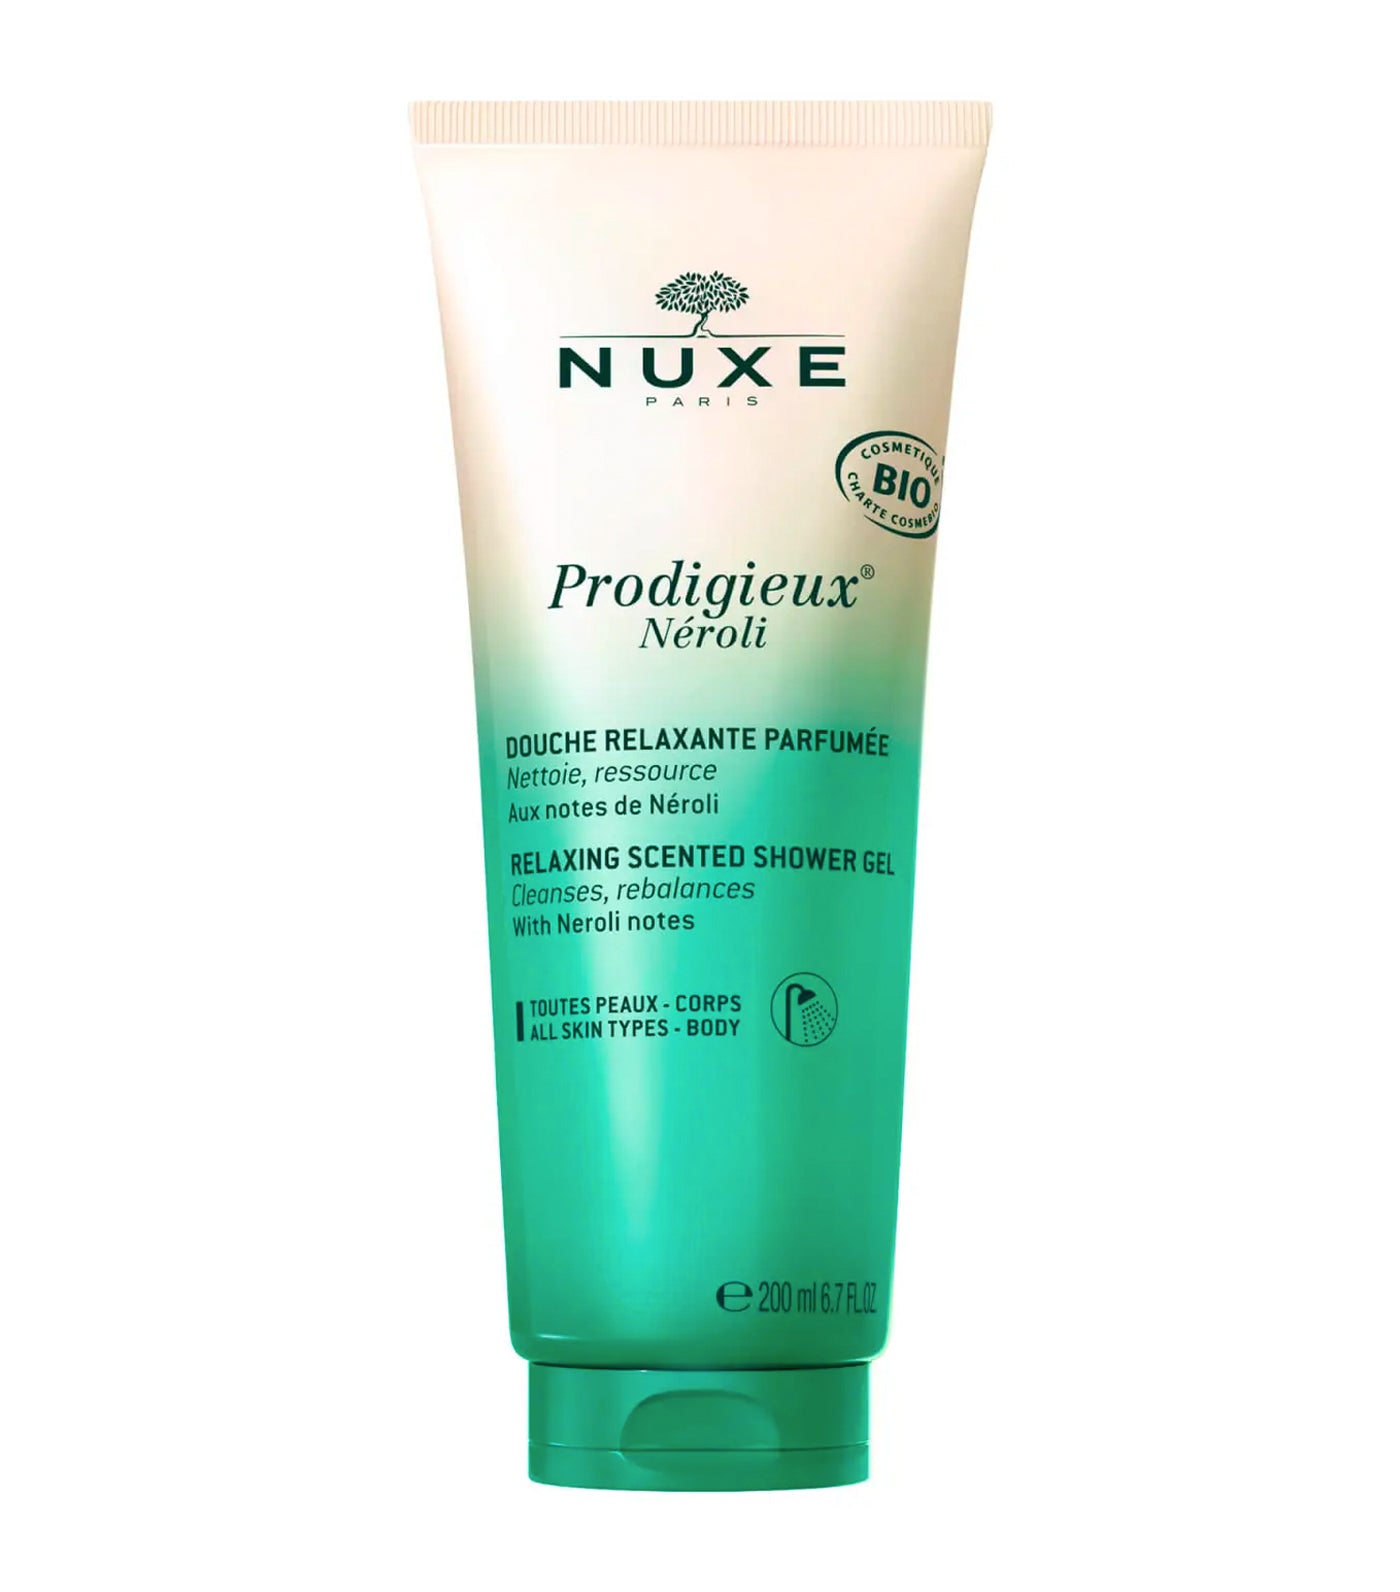 Prodigieux® Néroli - Relaxing Scented Shower Gel